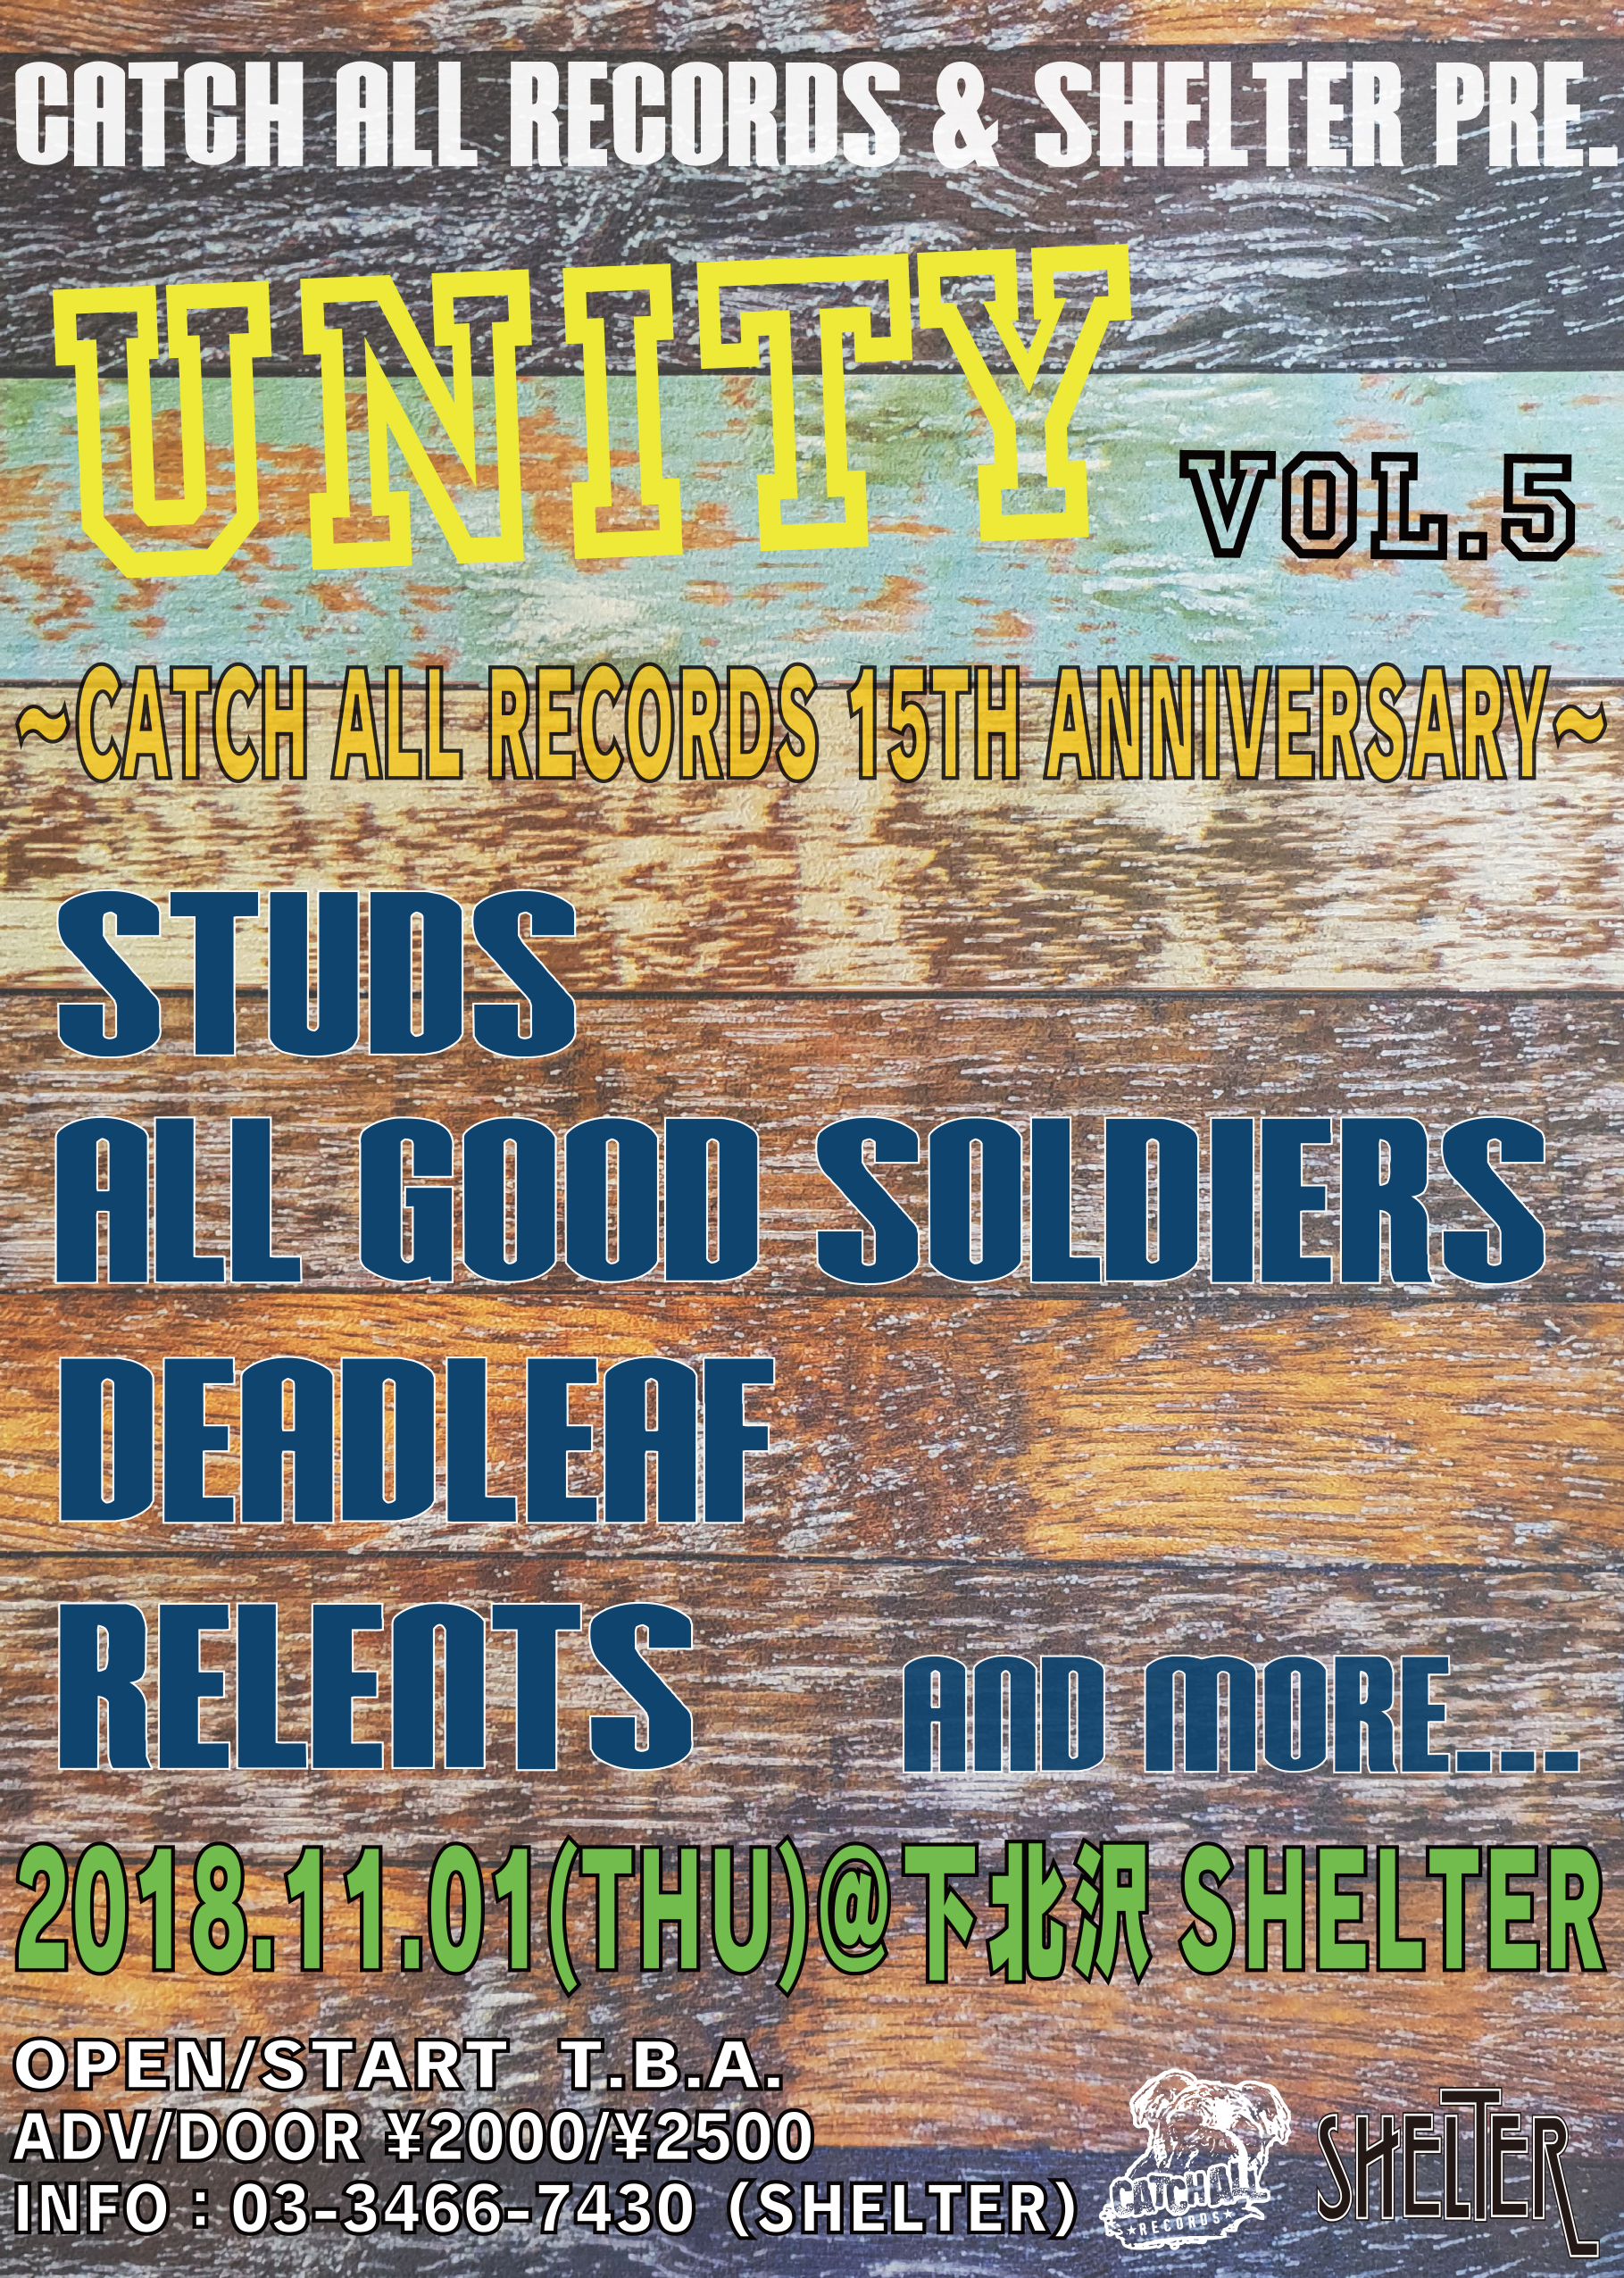 UNITY vol.5